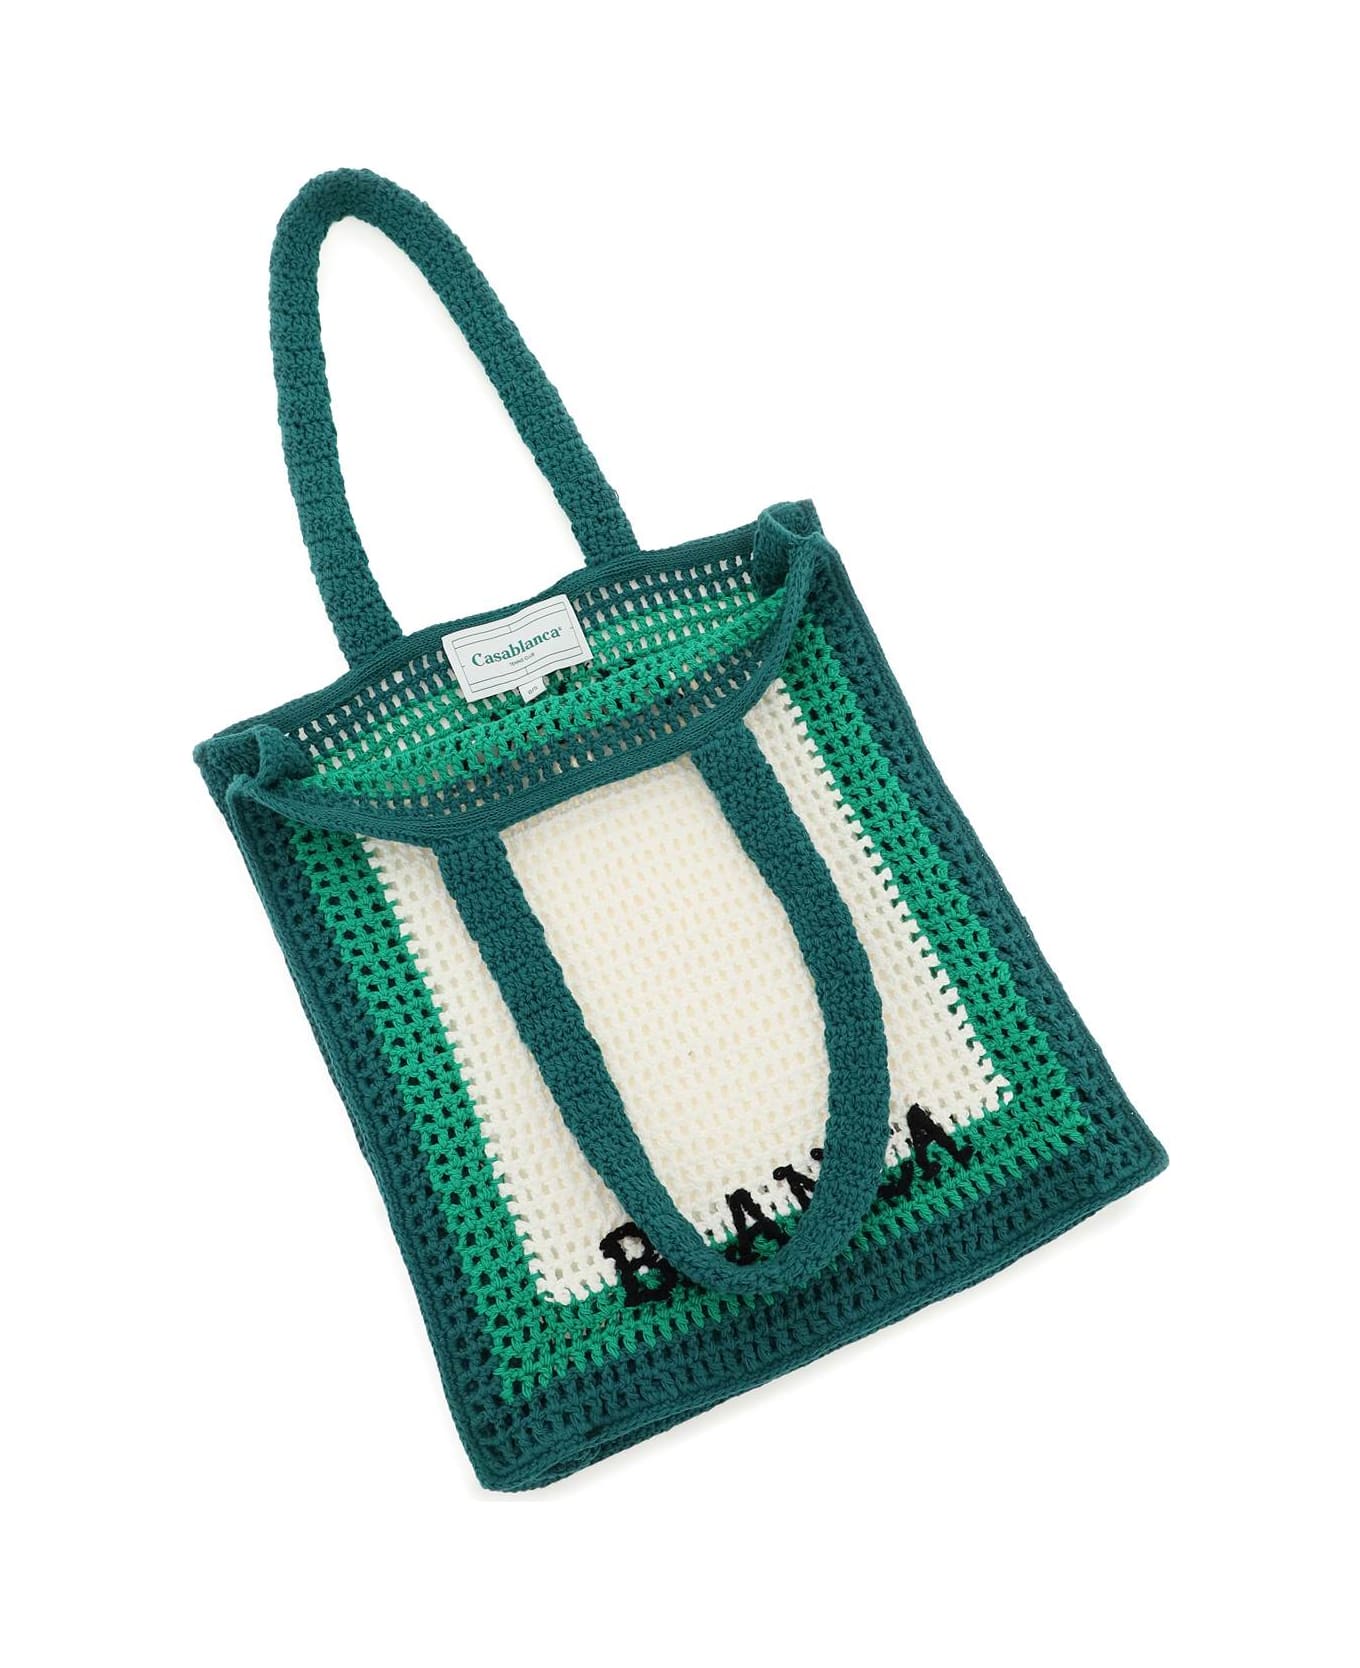 Casablanca Logo Cotton Crochet Tote Bag - Green